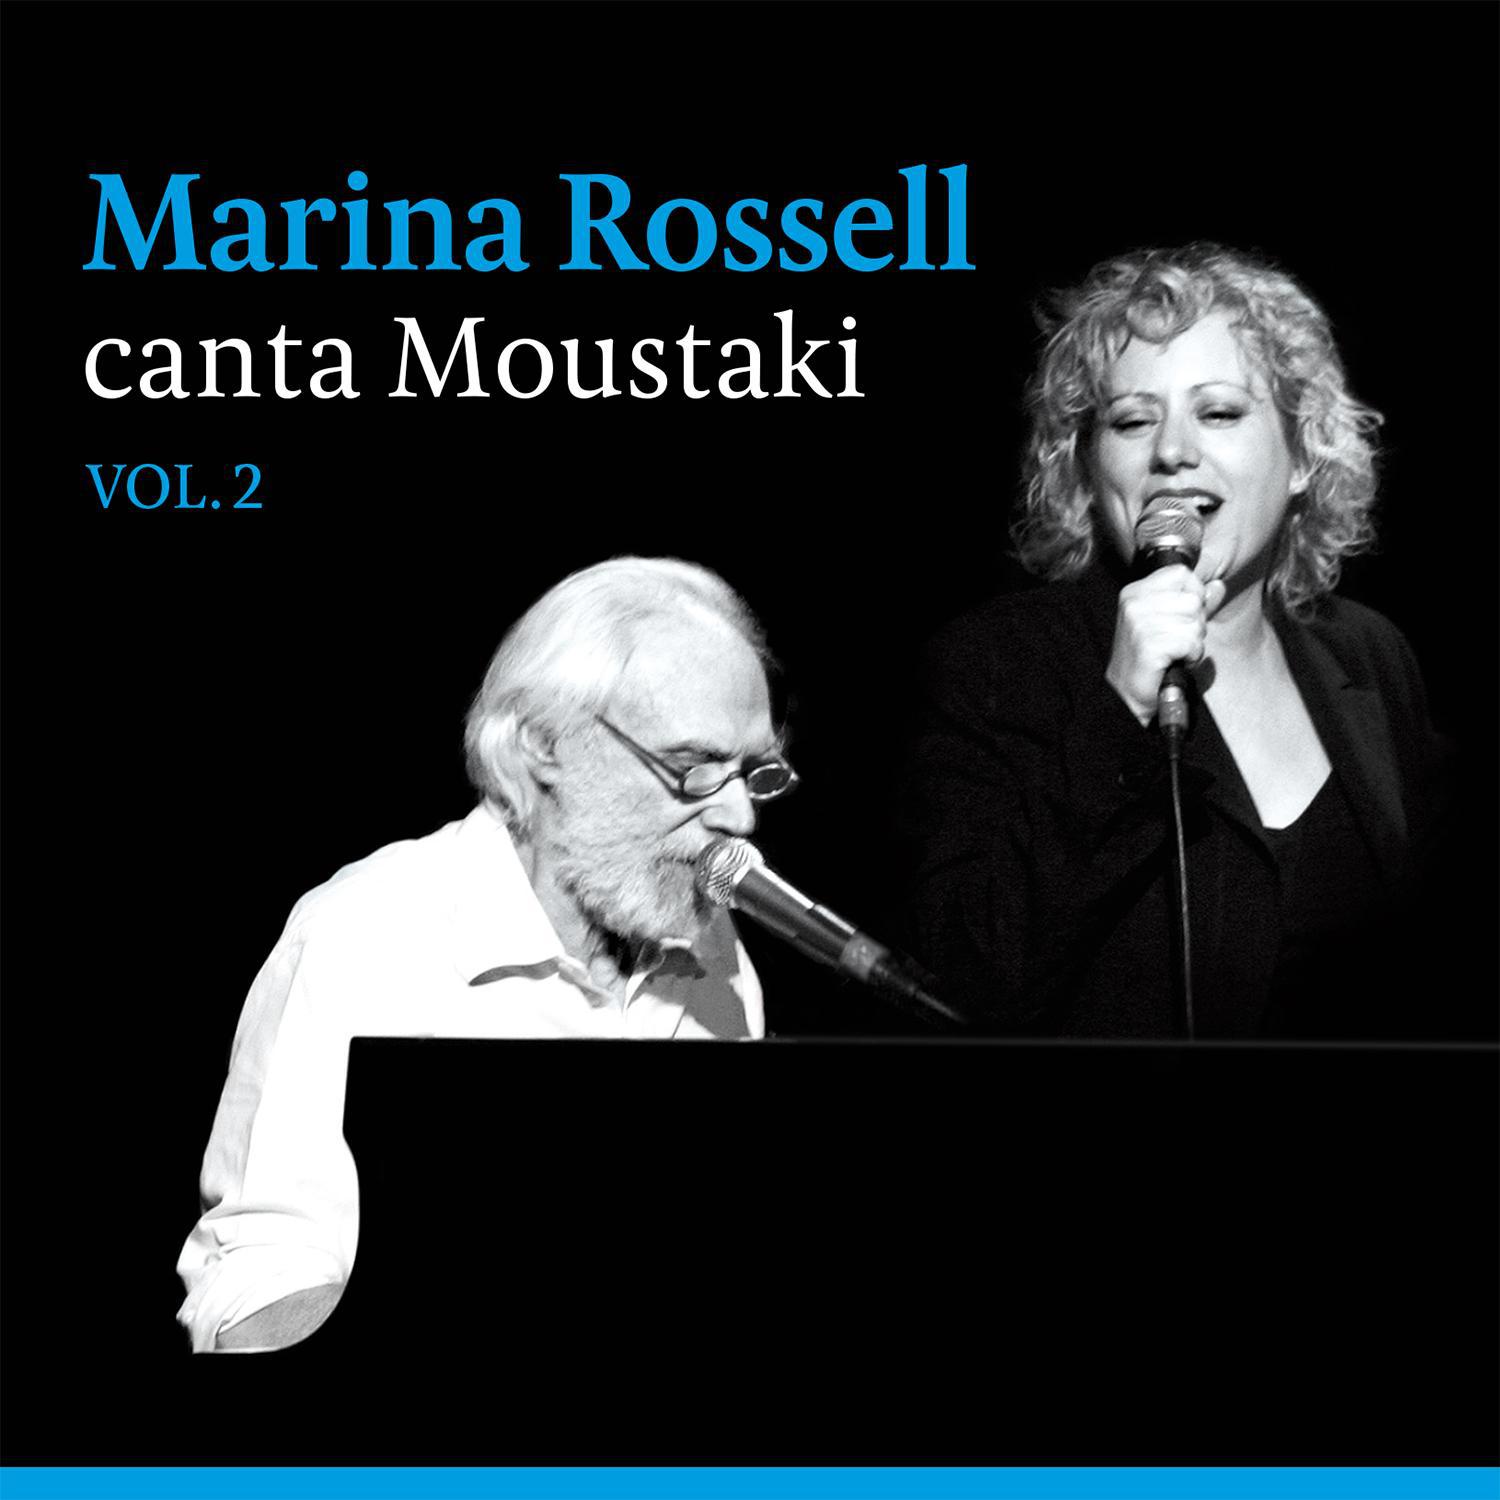 Marina Rossell Canta Moustaki Vol. 2